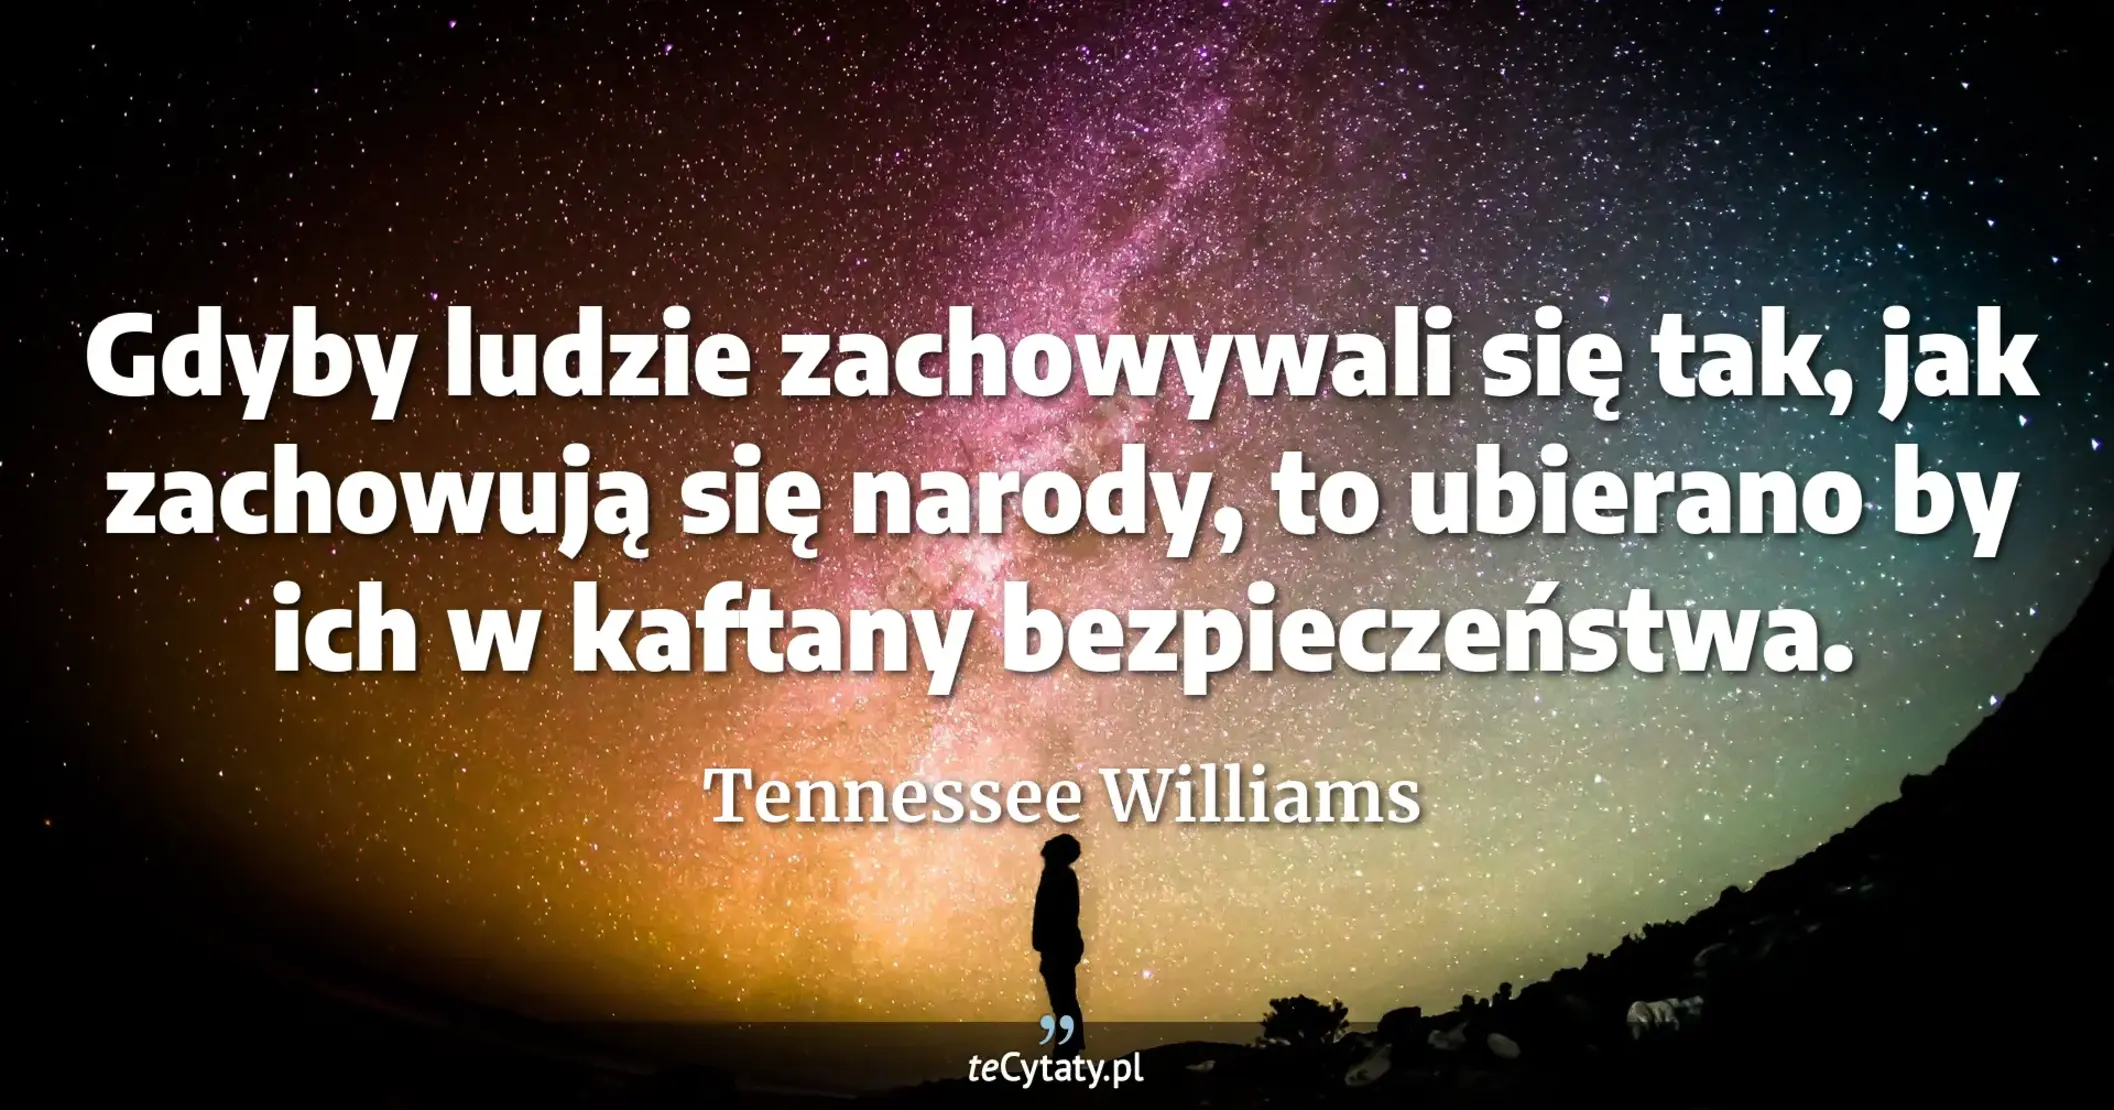 Gdyby ludzie zachowywali się tak, jak zachowują się narody, to ubierano by ich w kaftany bezpieczeństwa. - Tennessee Williams